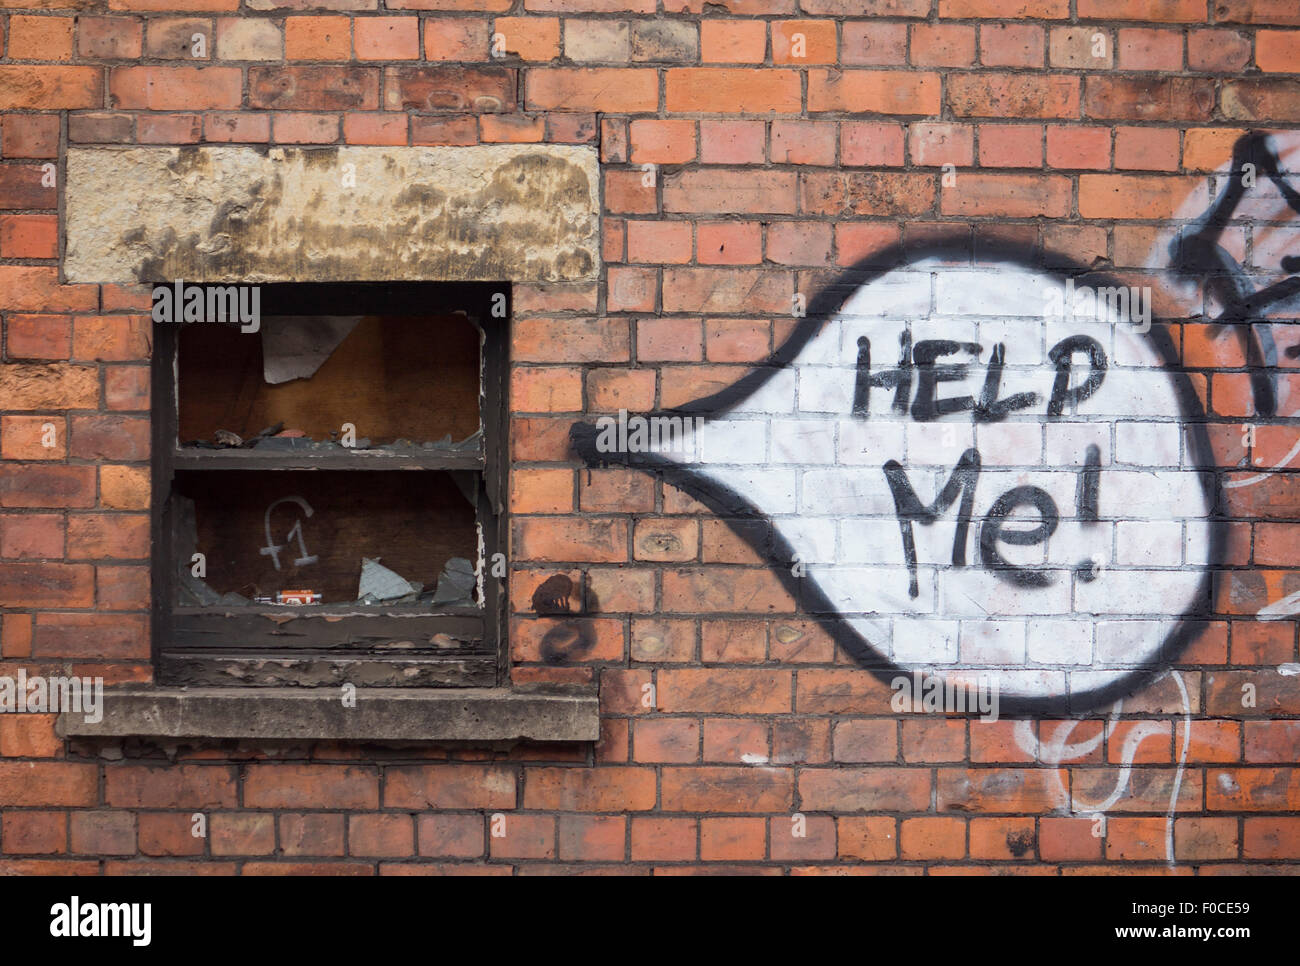 "Hilf mir!" Graffiti Wörter geschrieben in Sprechblase neben dem gemalt mit Brettern aus Fenster verfallene Gebäude aus rotem Backstein wal Stockfoto